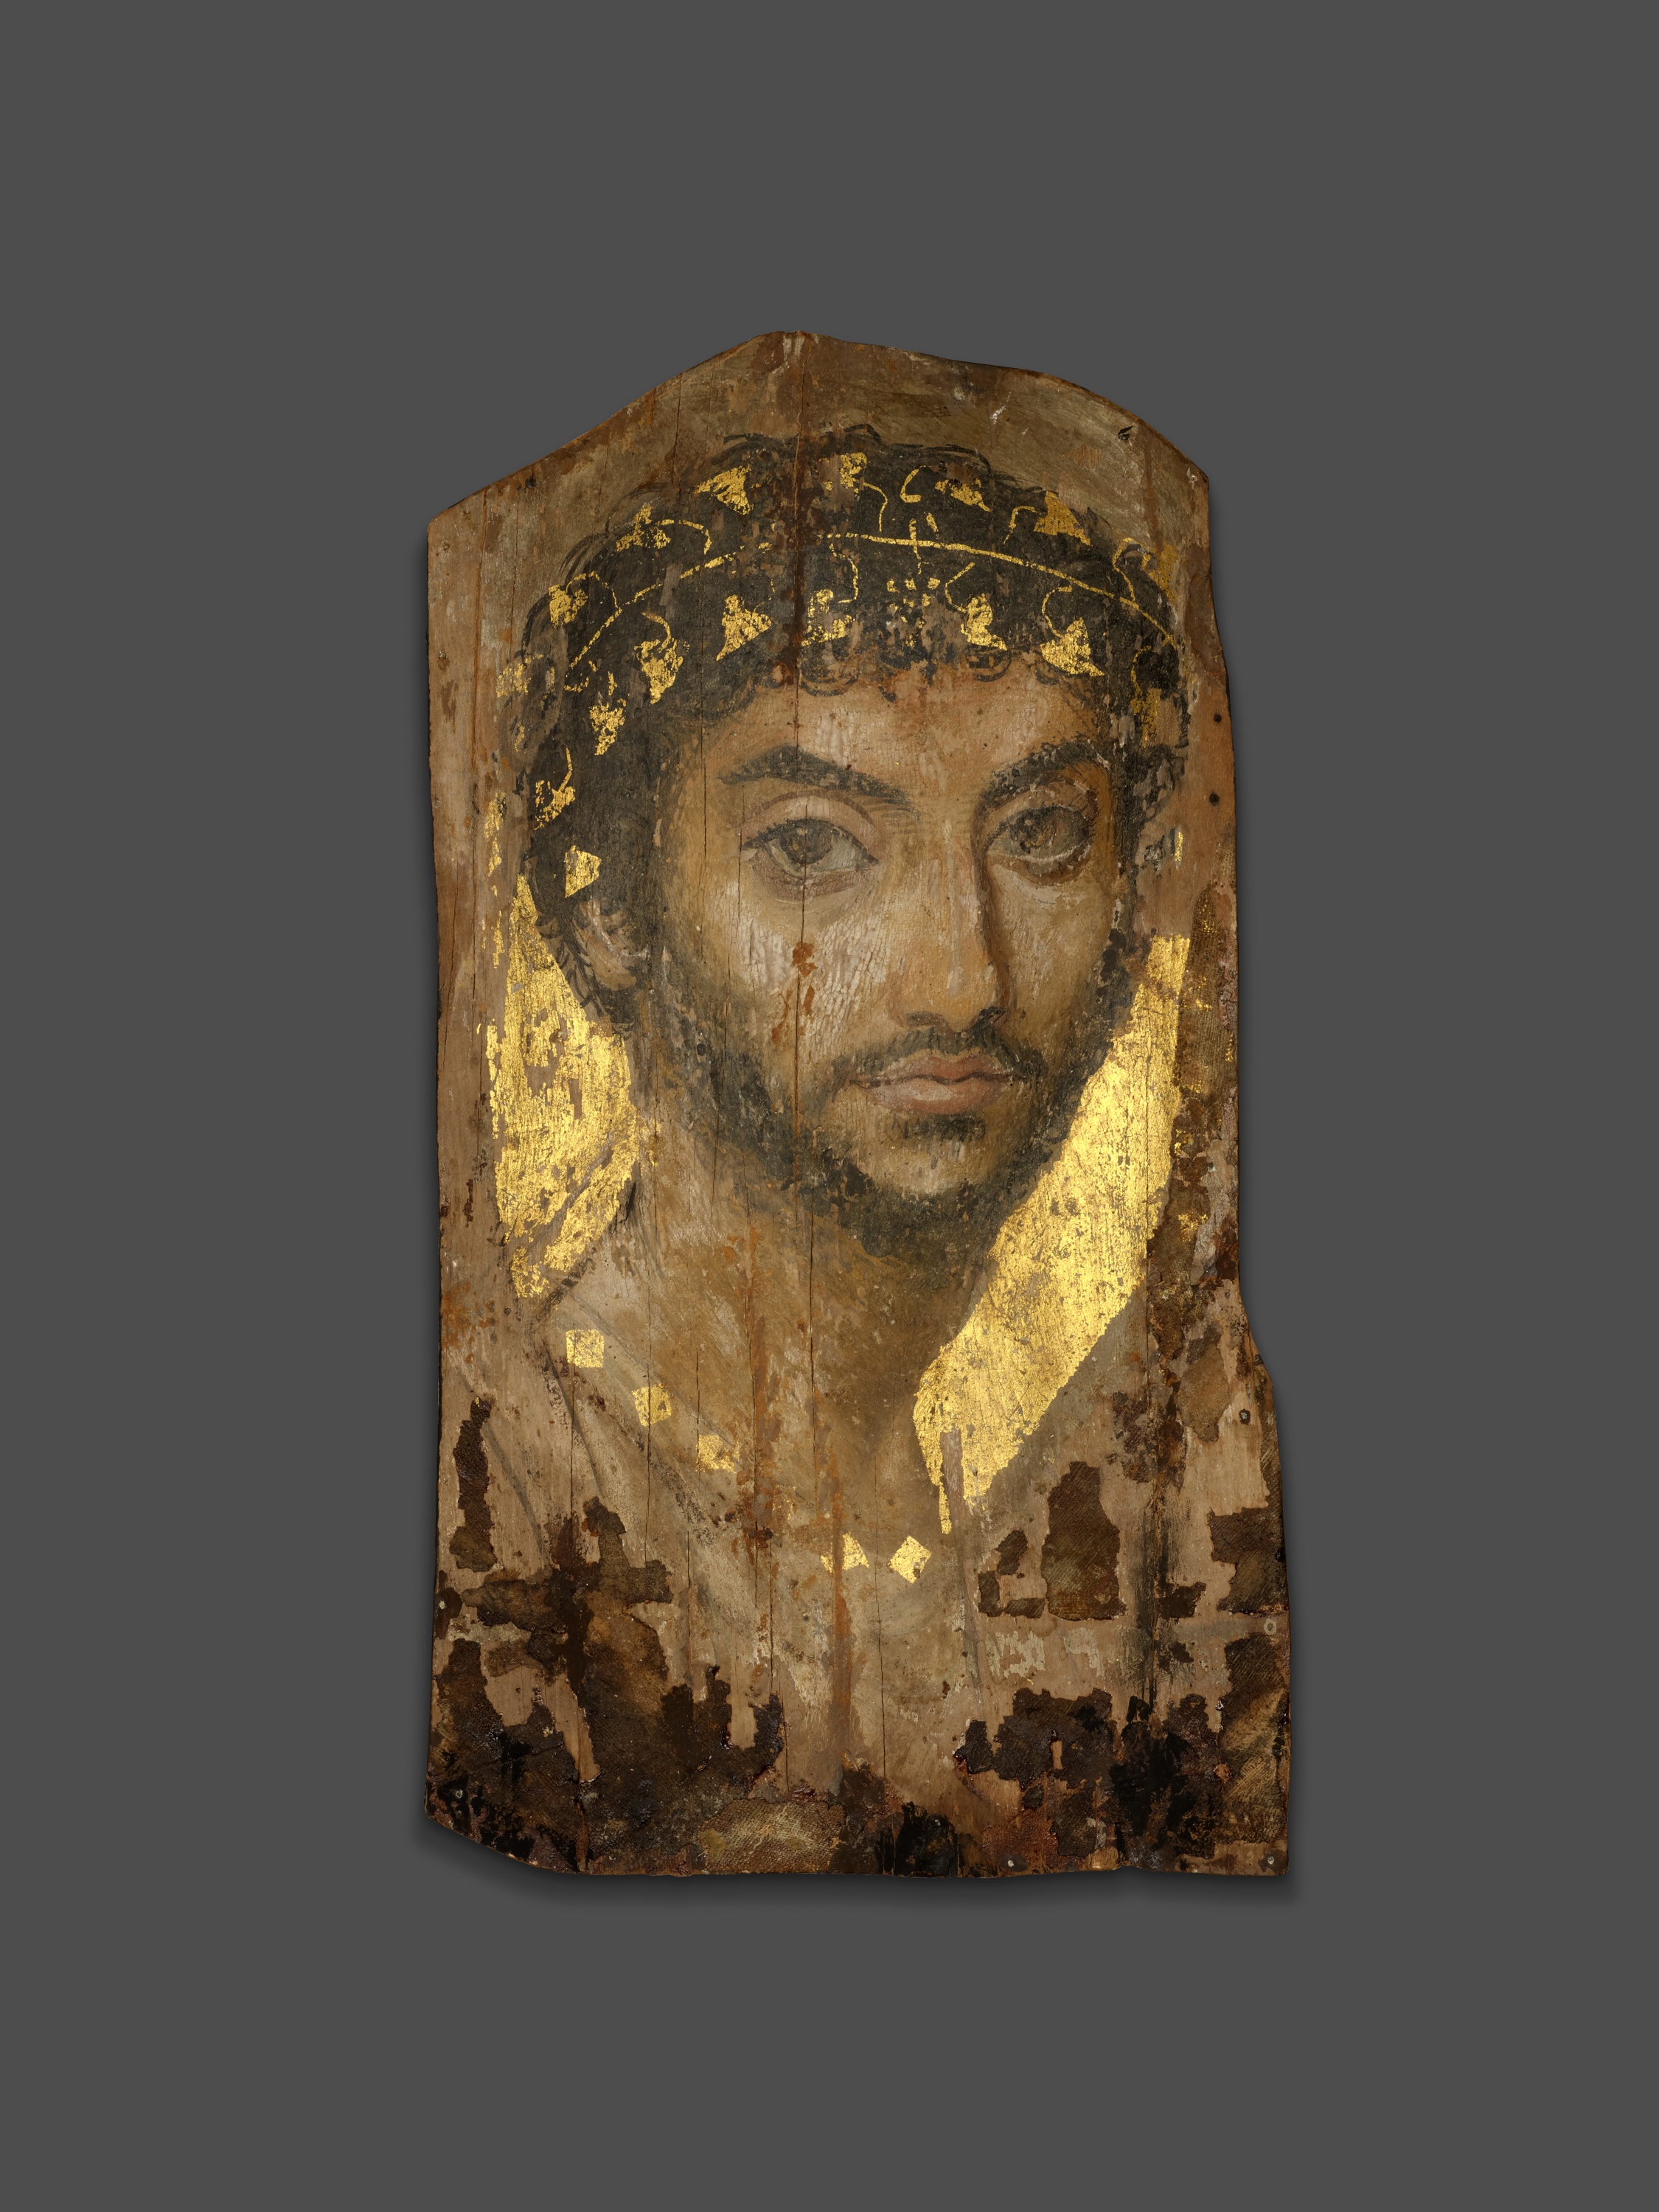 Retrato de un hombre con una corona de laurel by Artista anónimo  - 101 - 150 d. C. - 39,4 x 22 x 0,2 cm Instituto de Arte de Chicago